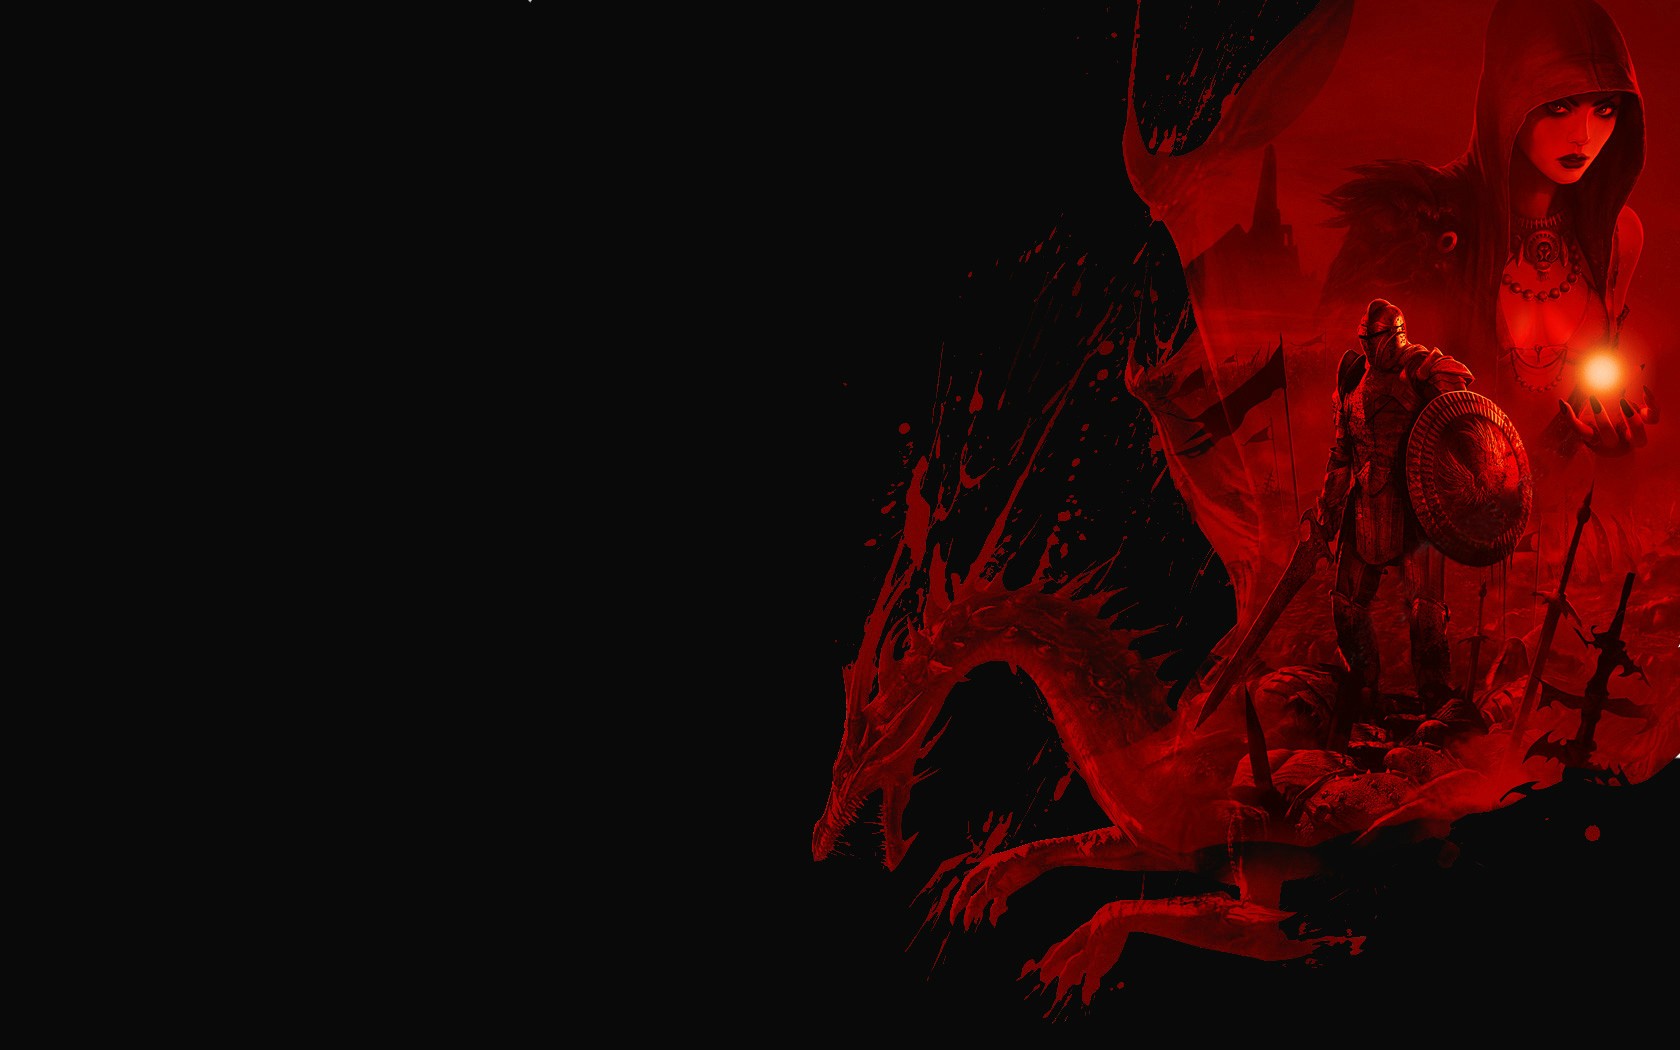 Скачать обои бесплатно Видеоигры, Dragon Age: Начало, Эпоха Драконов картинка на рабочий стол ПК